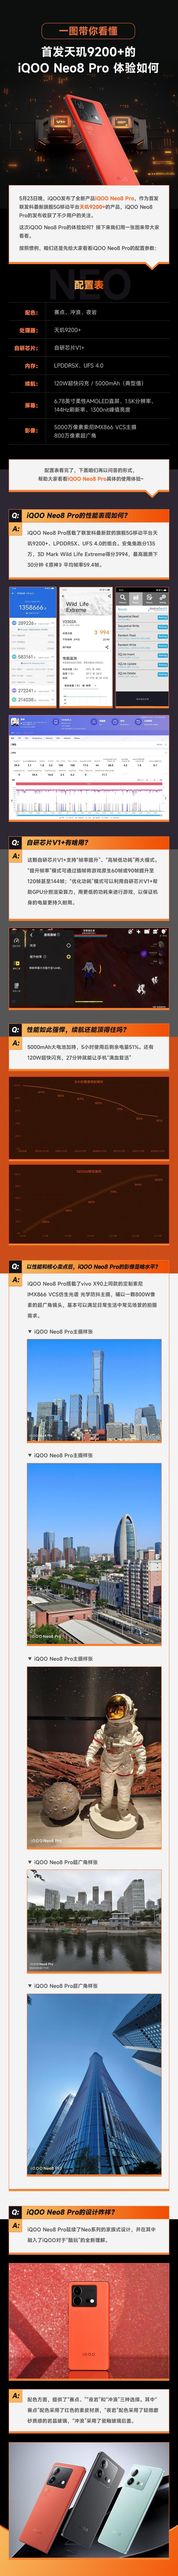 5月23日晚，iQOO发布了全新产品iQOO Neo8 Pro，作为首发联发科最新旗舰5G移动平台天玑9200+的产品，iQOO Neo8 Pro的发布收获了不少用户的关注。这次iQOO Neo8 Pro的体验如何？接下来我们用一张图